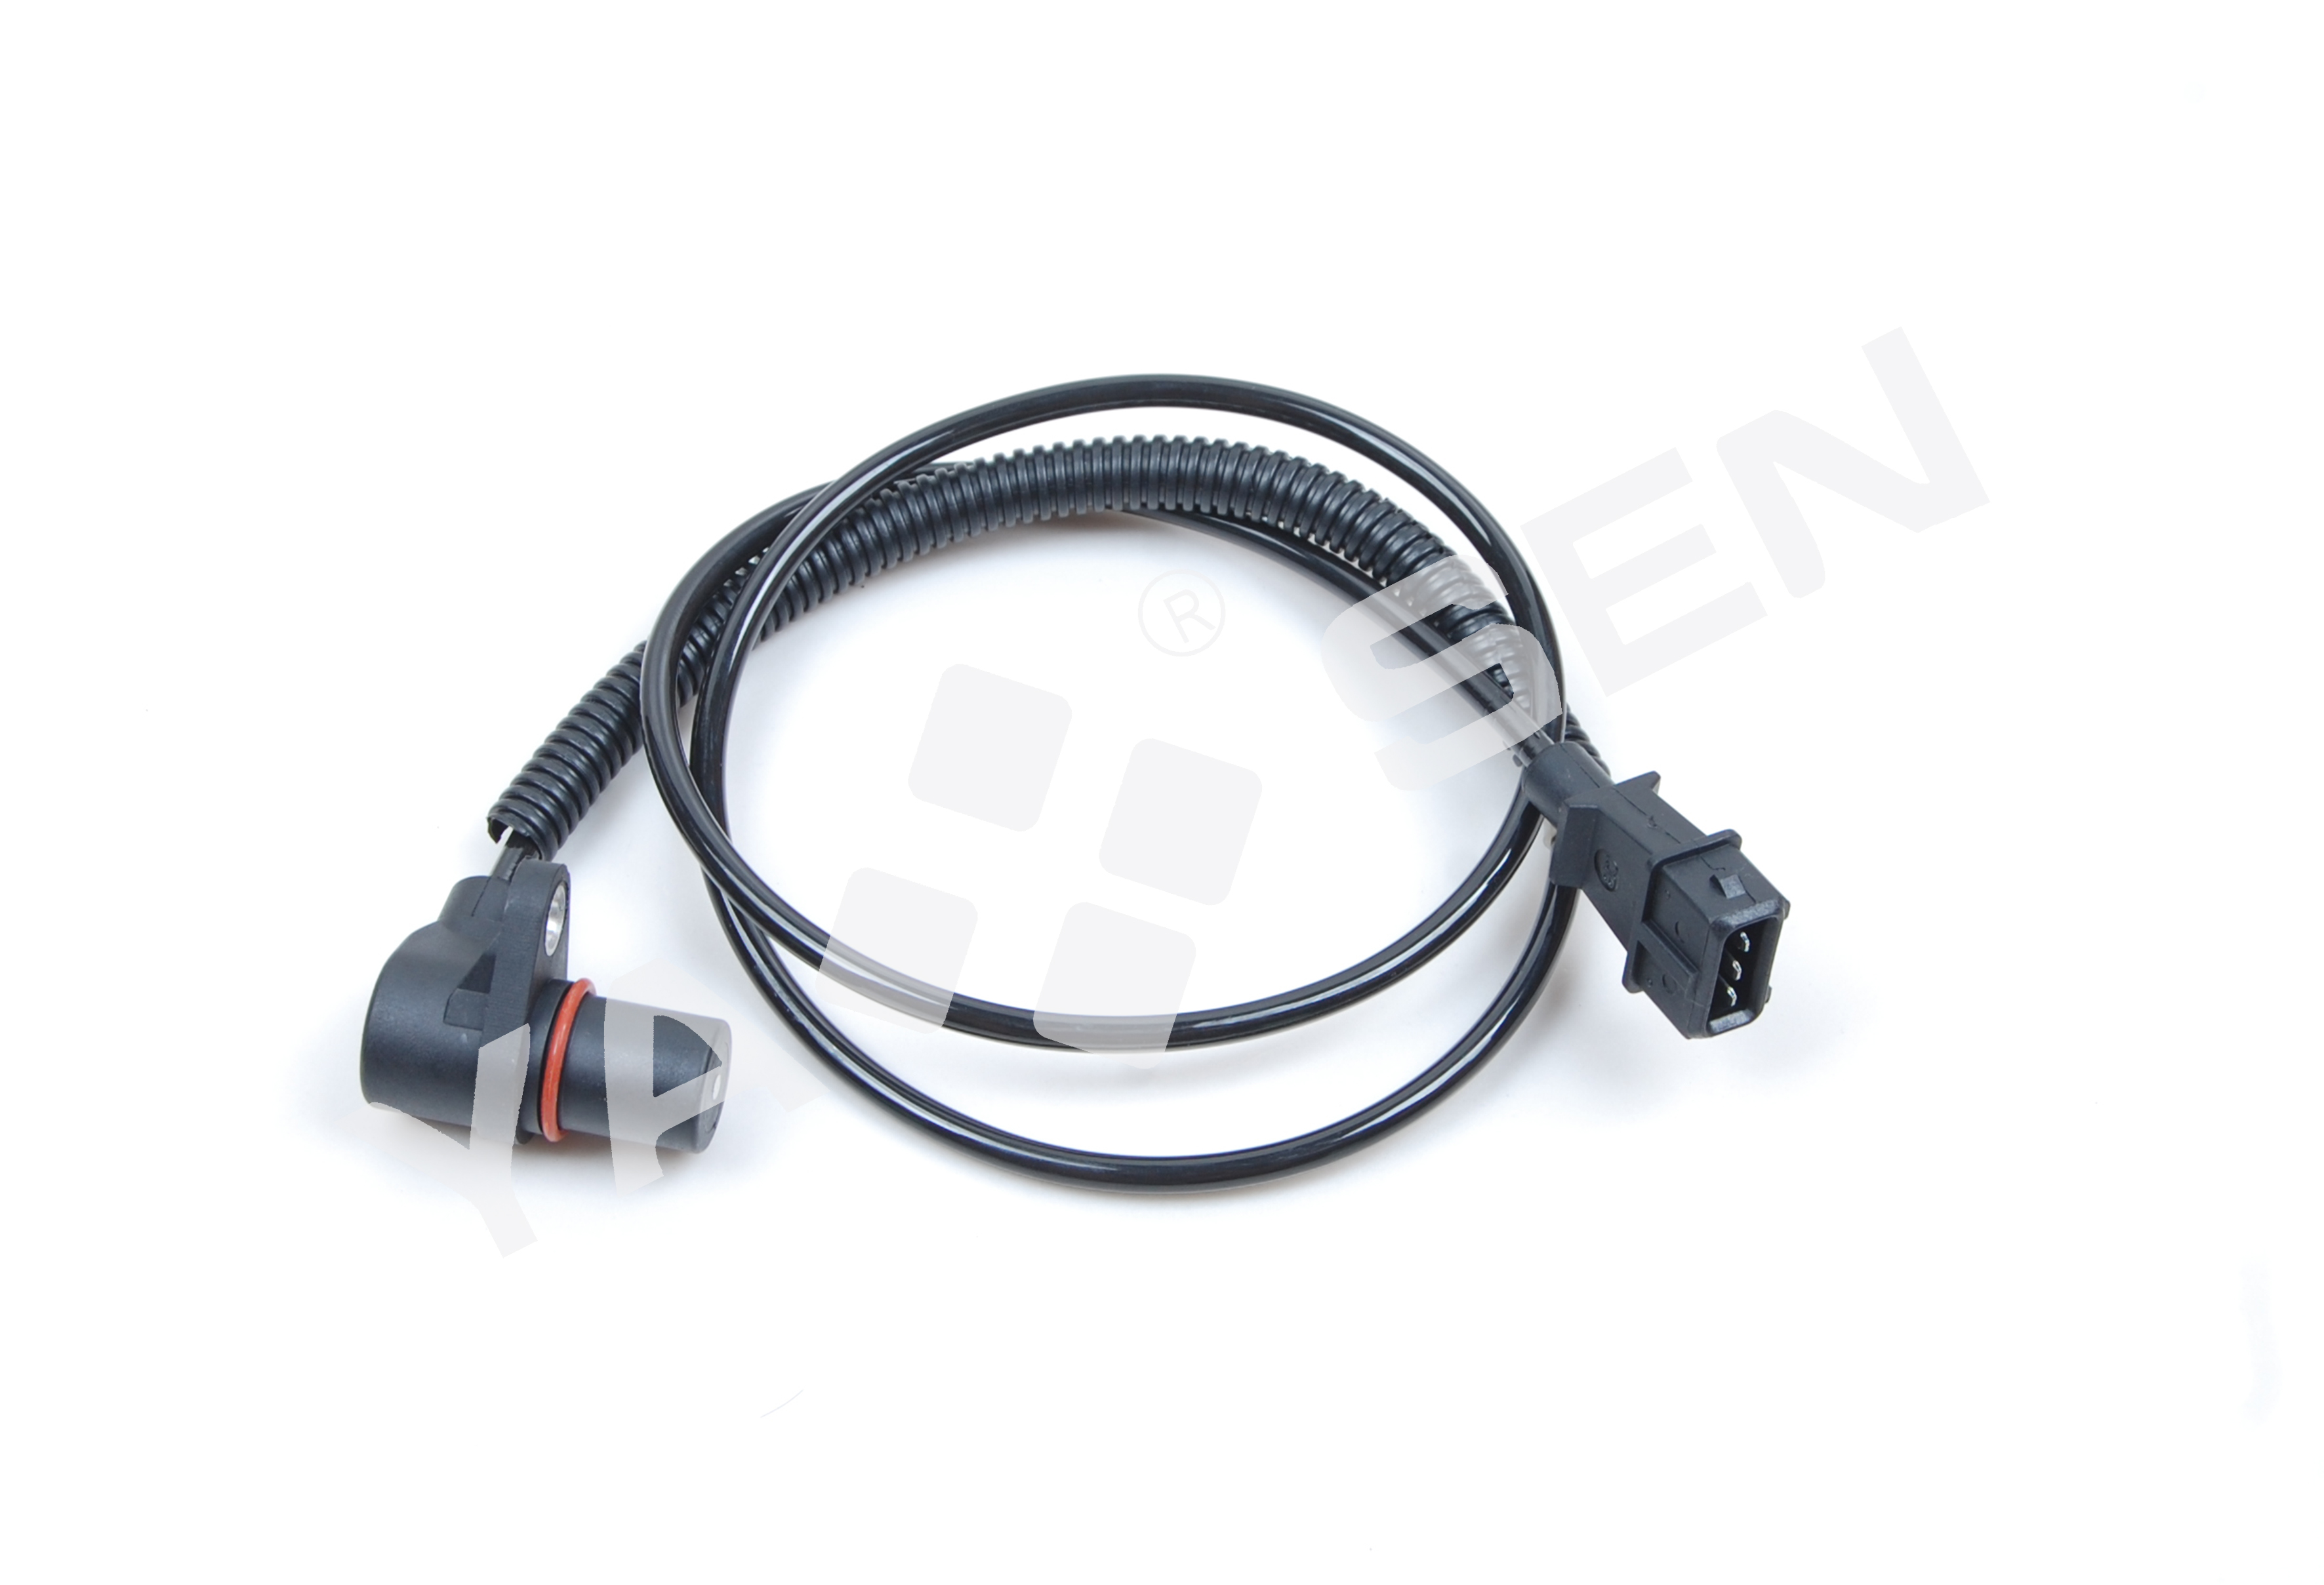 Manufactur standard Suzuki Camshaft Position Sensor - Crankshaft Position Sensor for Opel, 6238376 90493864 CS1094 70610403  240056  87151  0902045  6148990035 6PU00916380 – YASEN